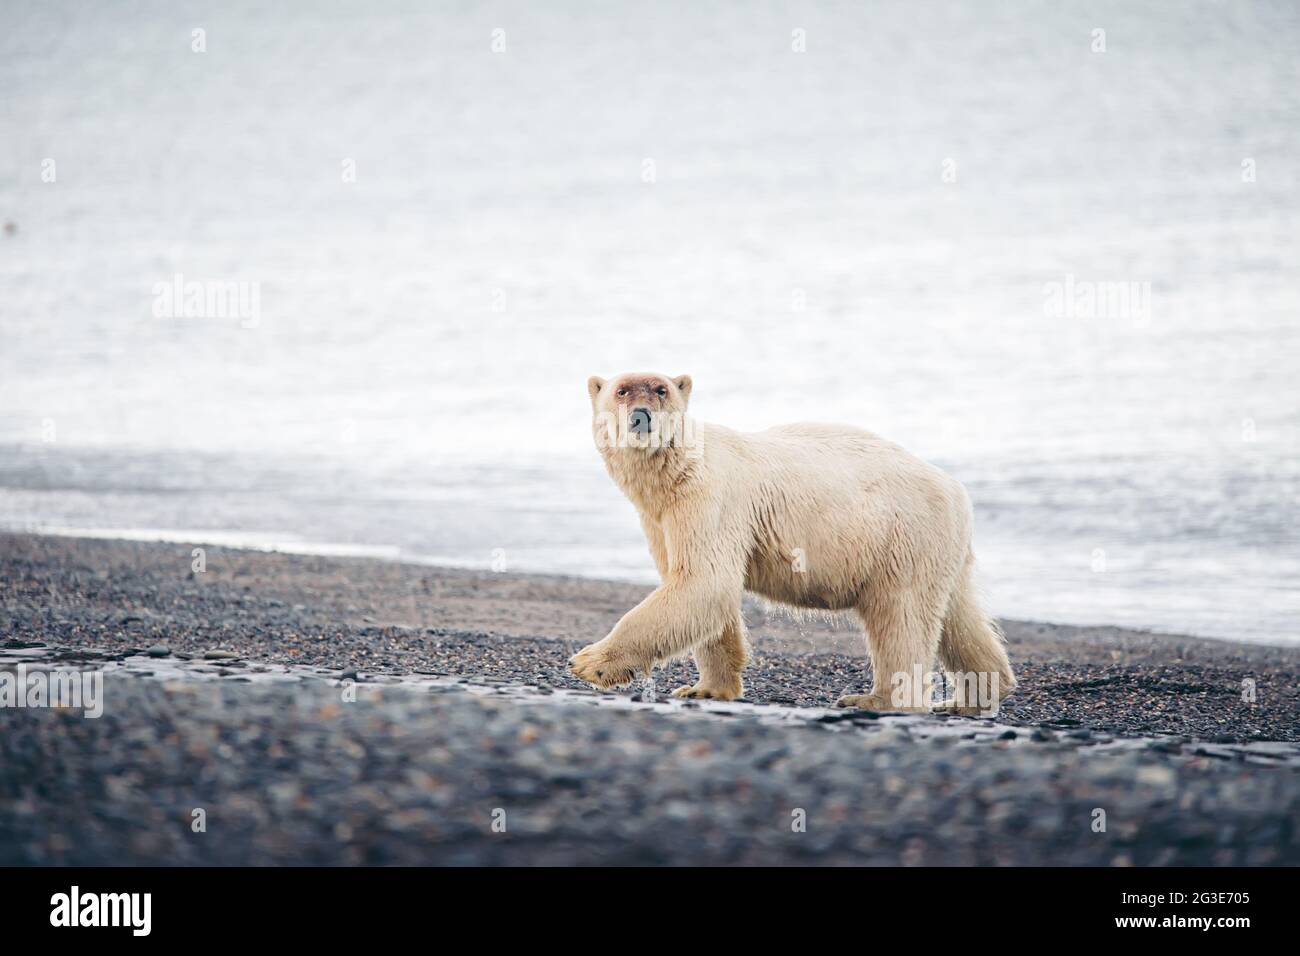 D Ours Polaire Sur Une Image De Plage L'ours polaire sur la plage Photo Stock - Alamy